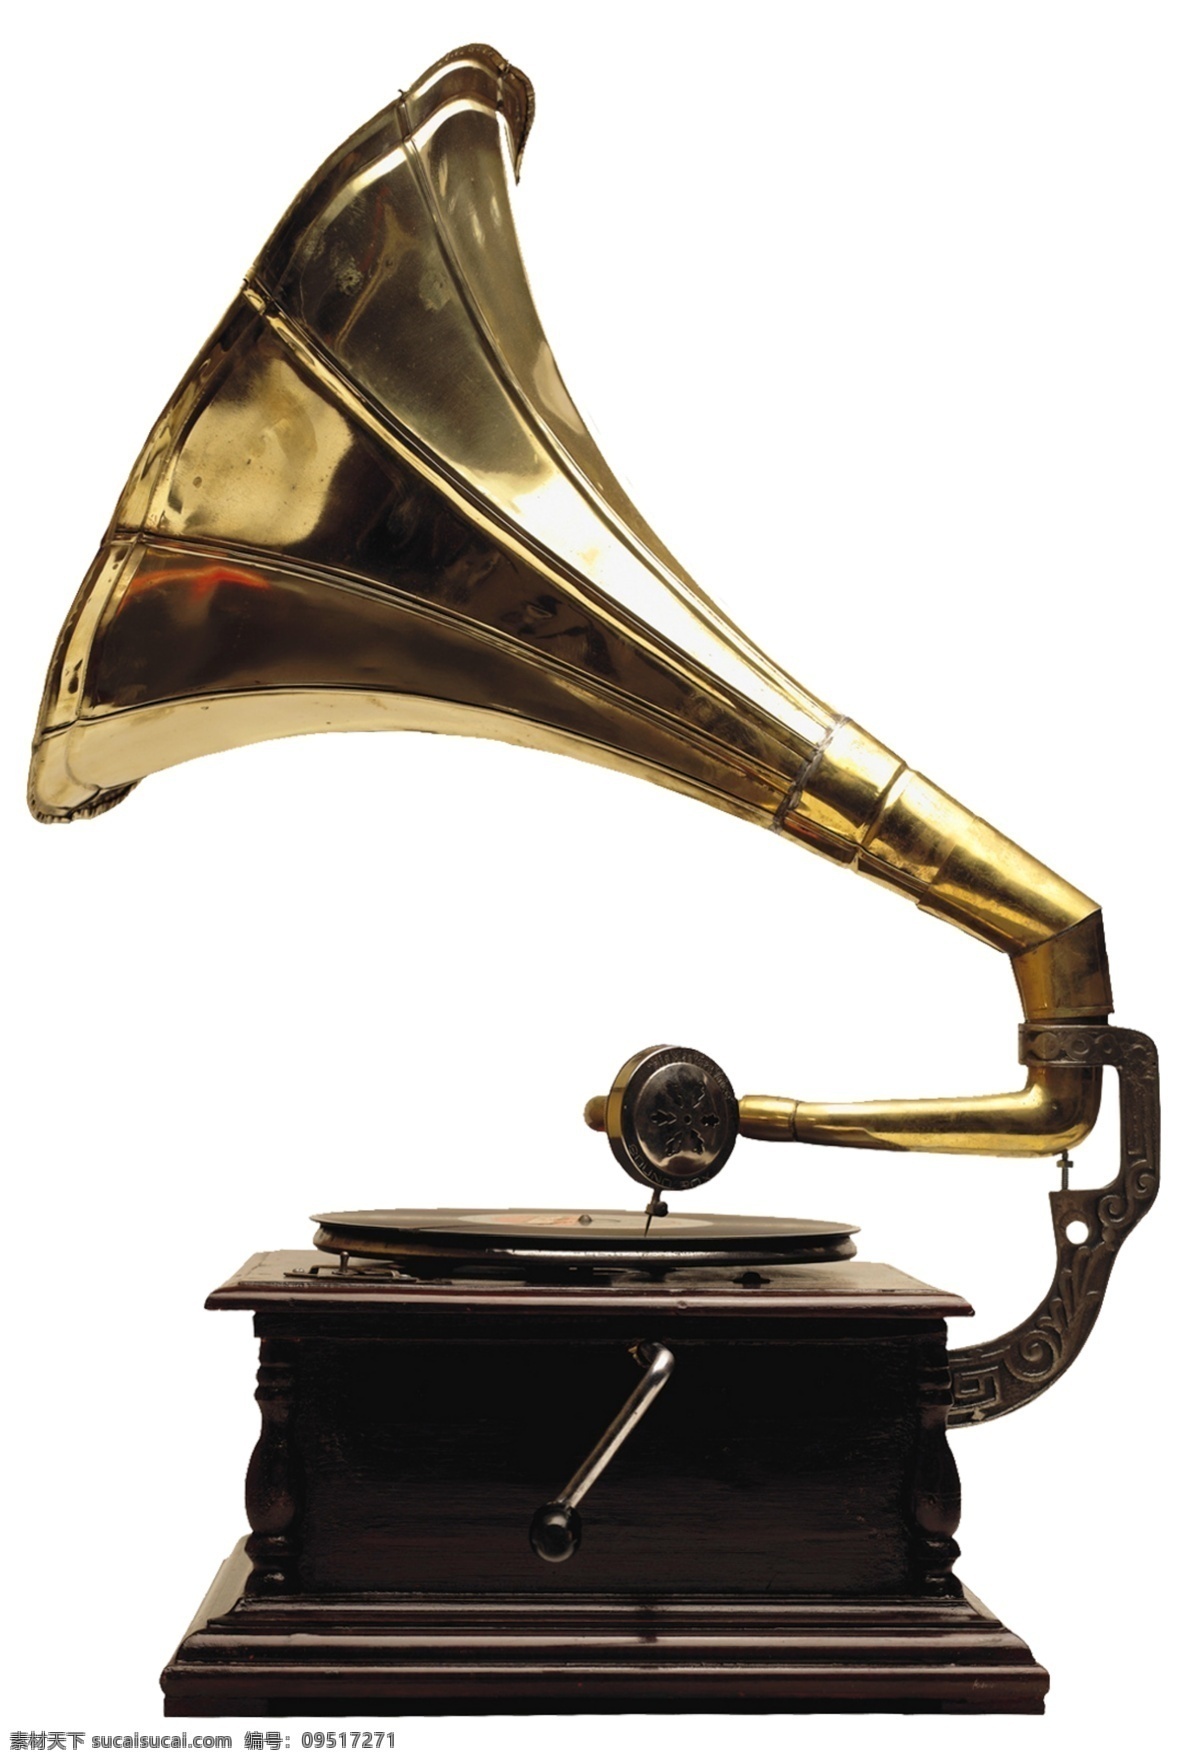 留声机 复古物件 物件 喇叭 音乐 地产用图 分层